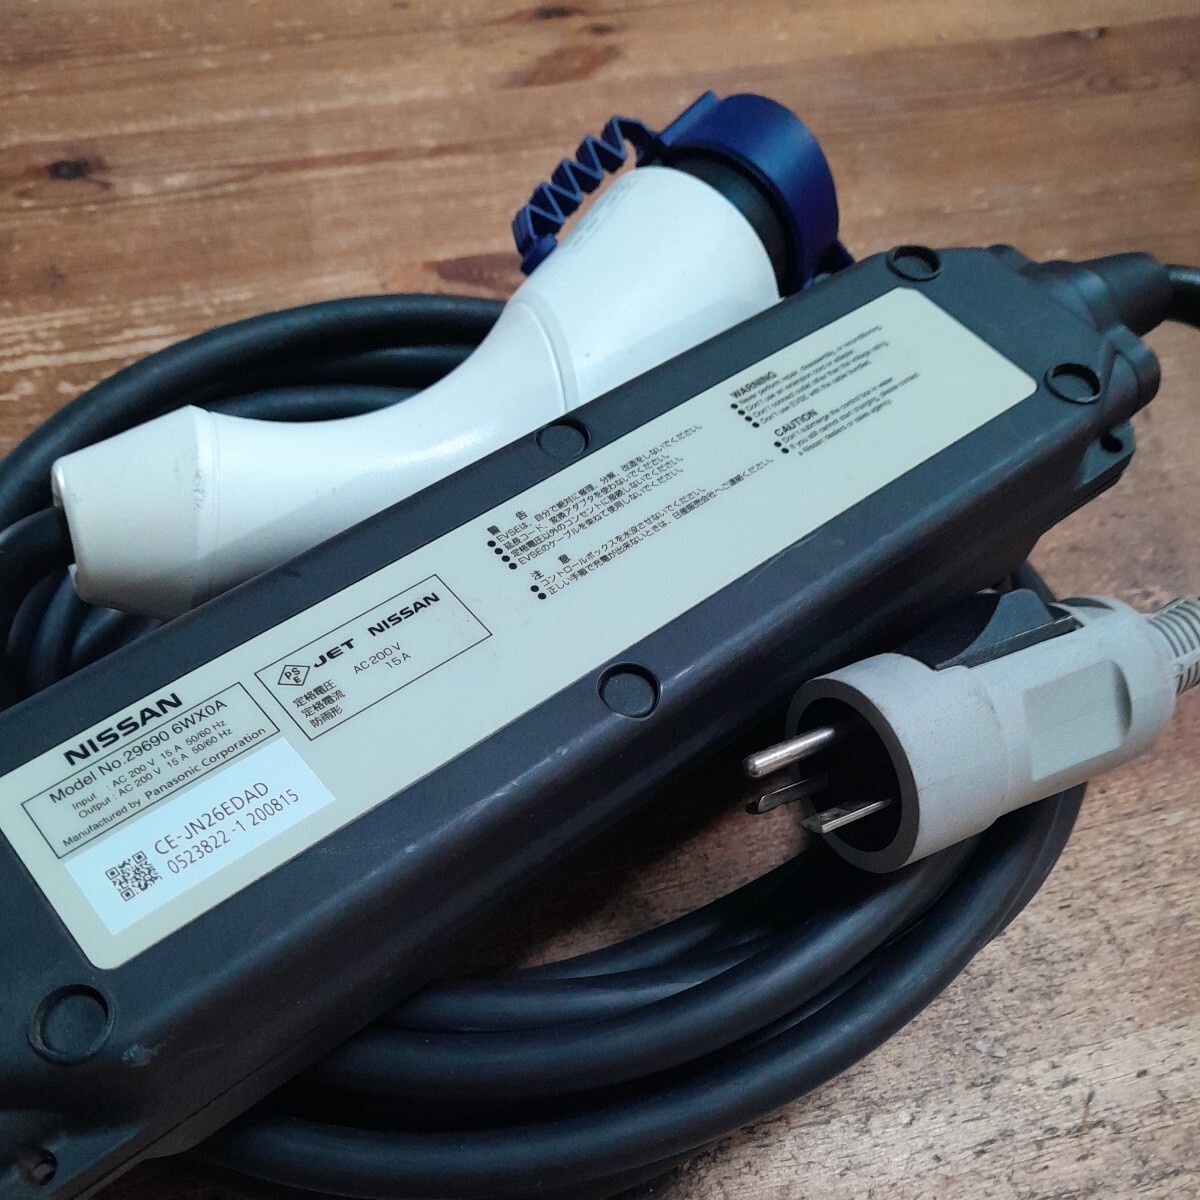 ( контрольный номер 23051771) Nissan leaf действующий оригинальный зарядка кабель 29690 6WX0A ZE1 специальный примерно 7.5m 200V б/у 2019 год производства распродажа 